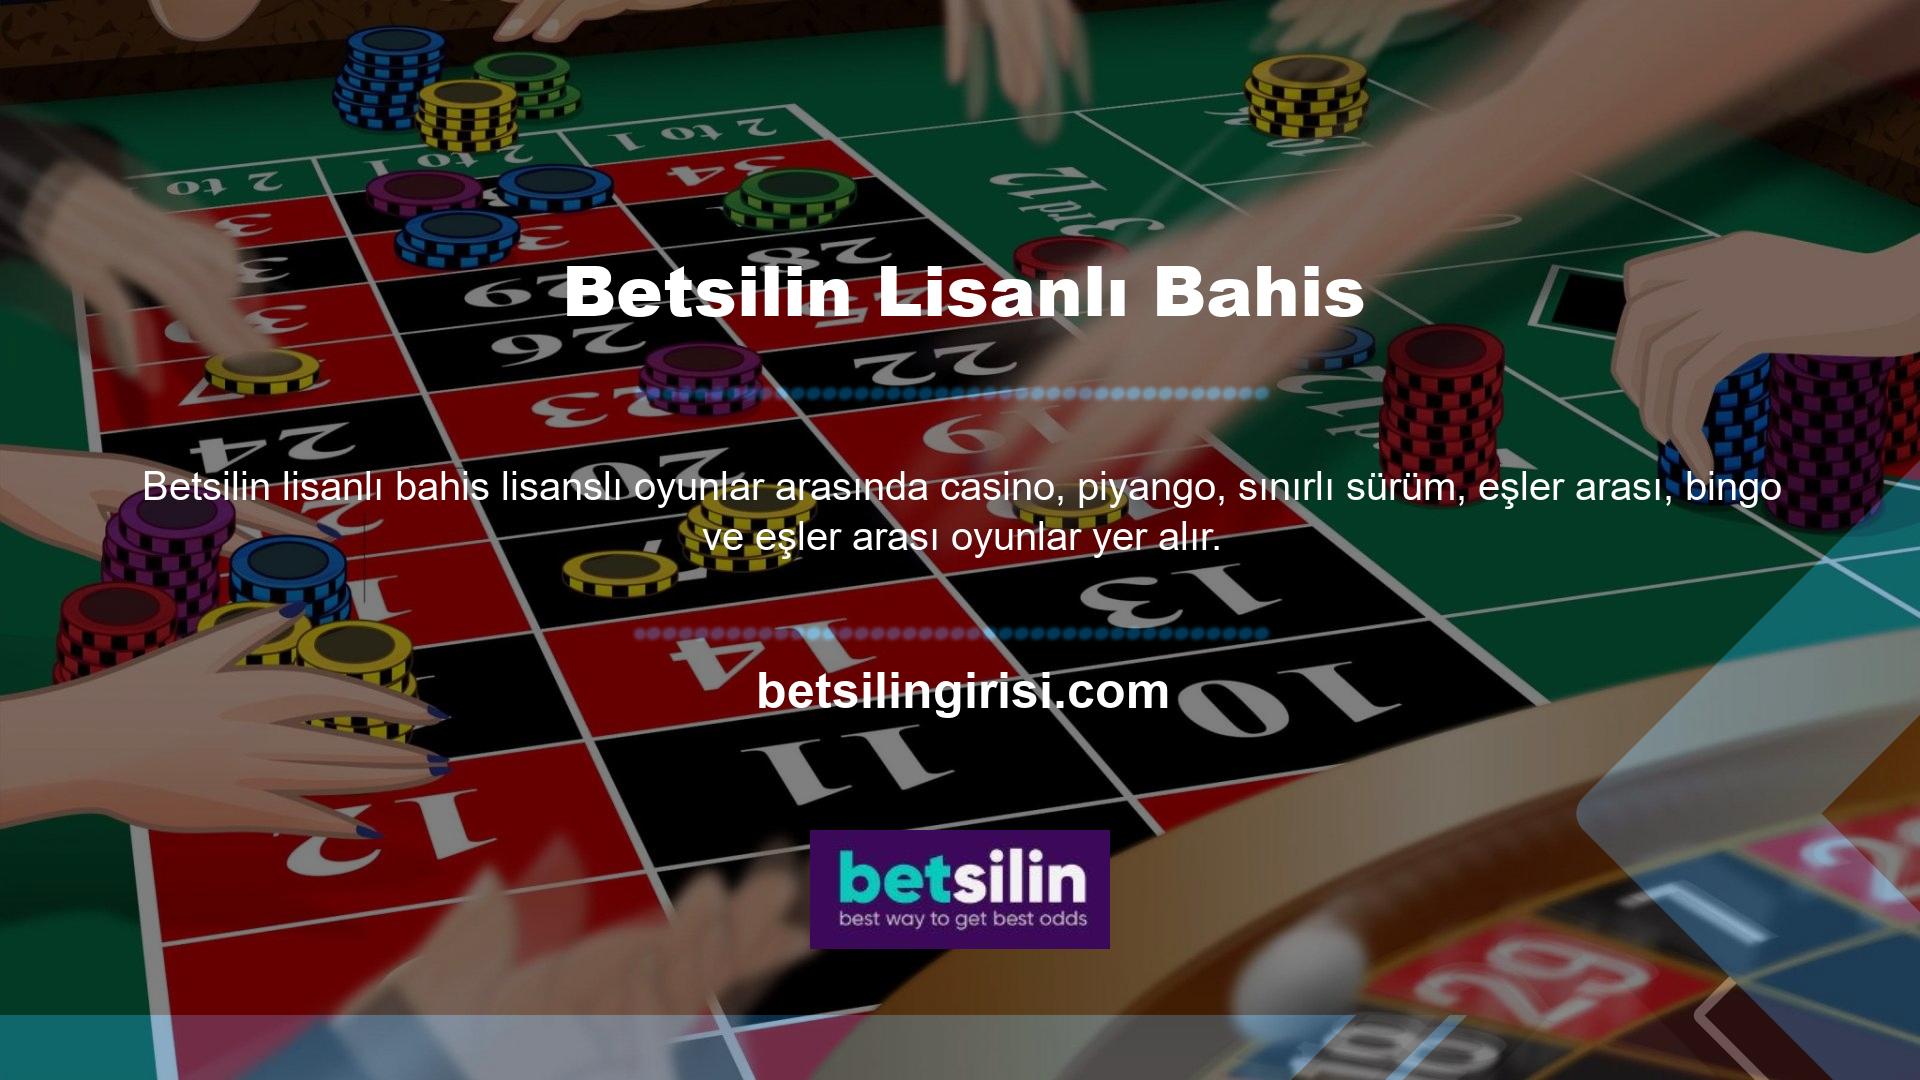 Betsilin, Türkiye'deki en popüler casino sitelerinden biridir, ancak ne yazık ki Türkiye'de yasaklanmıştır ve siteye erişime izin verilmemektedir